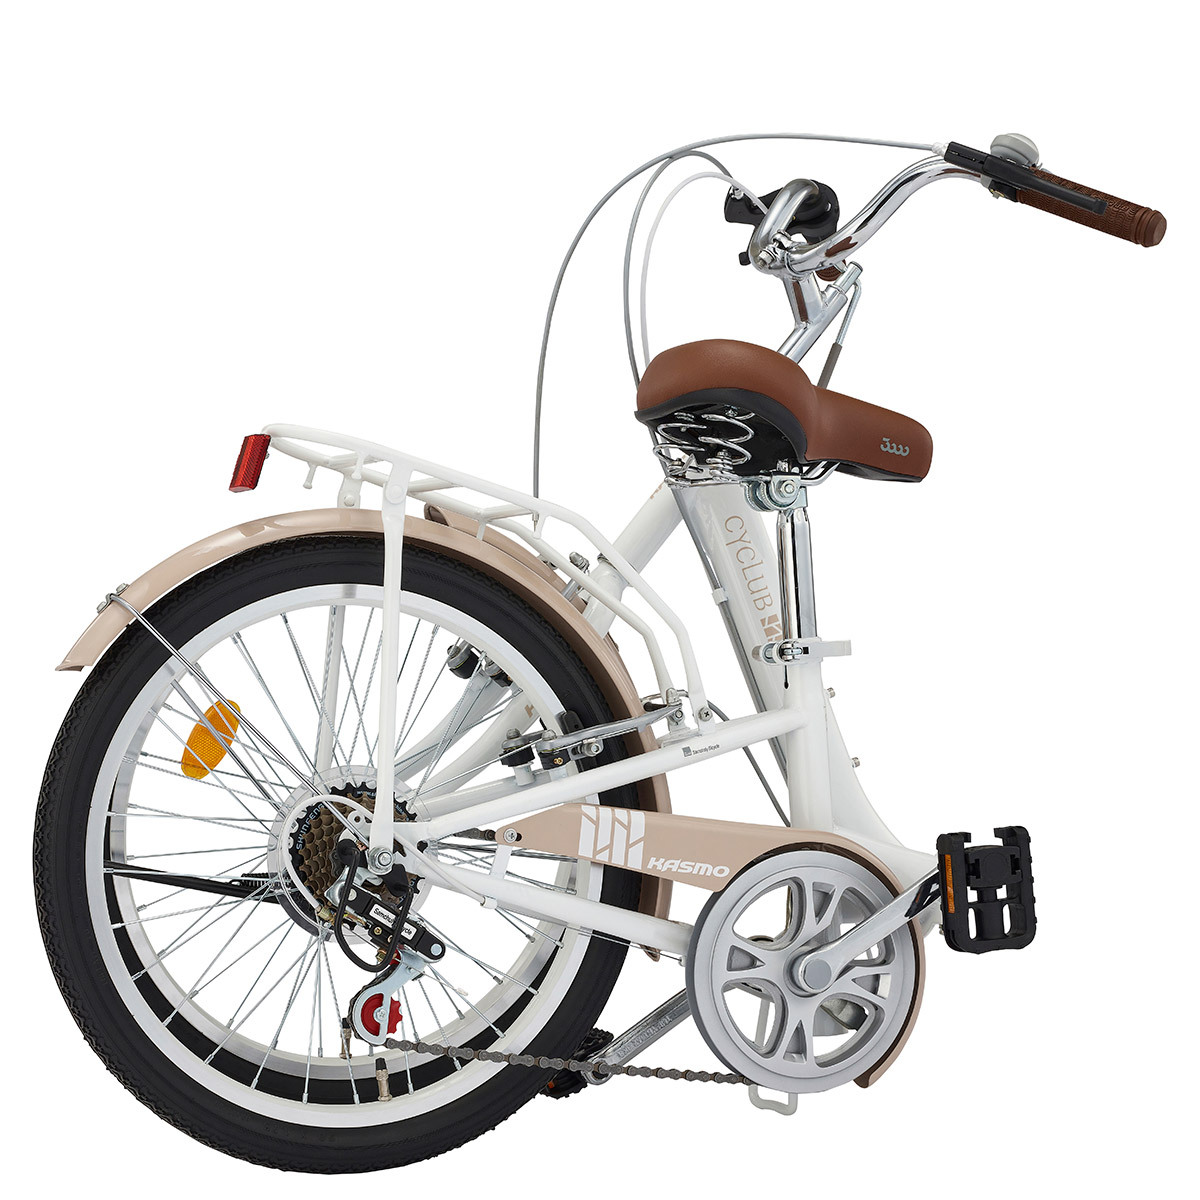 카스모 싸이클럽 접이식 자전거 51cm (20인치)